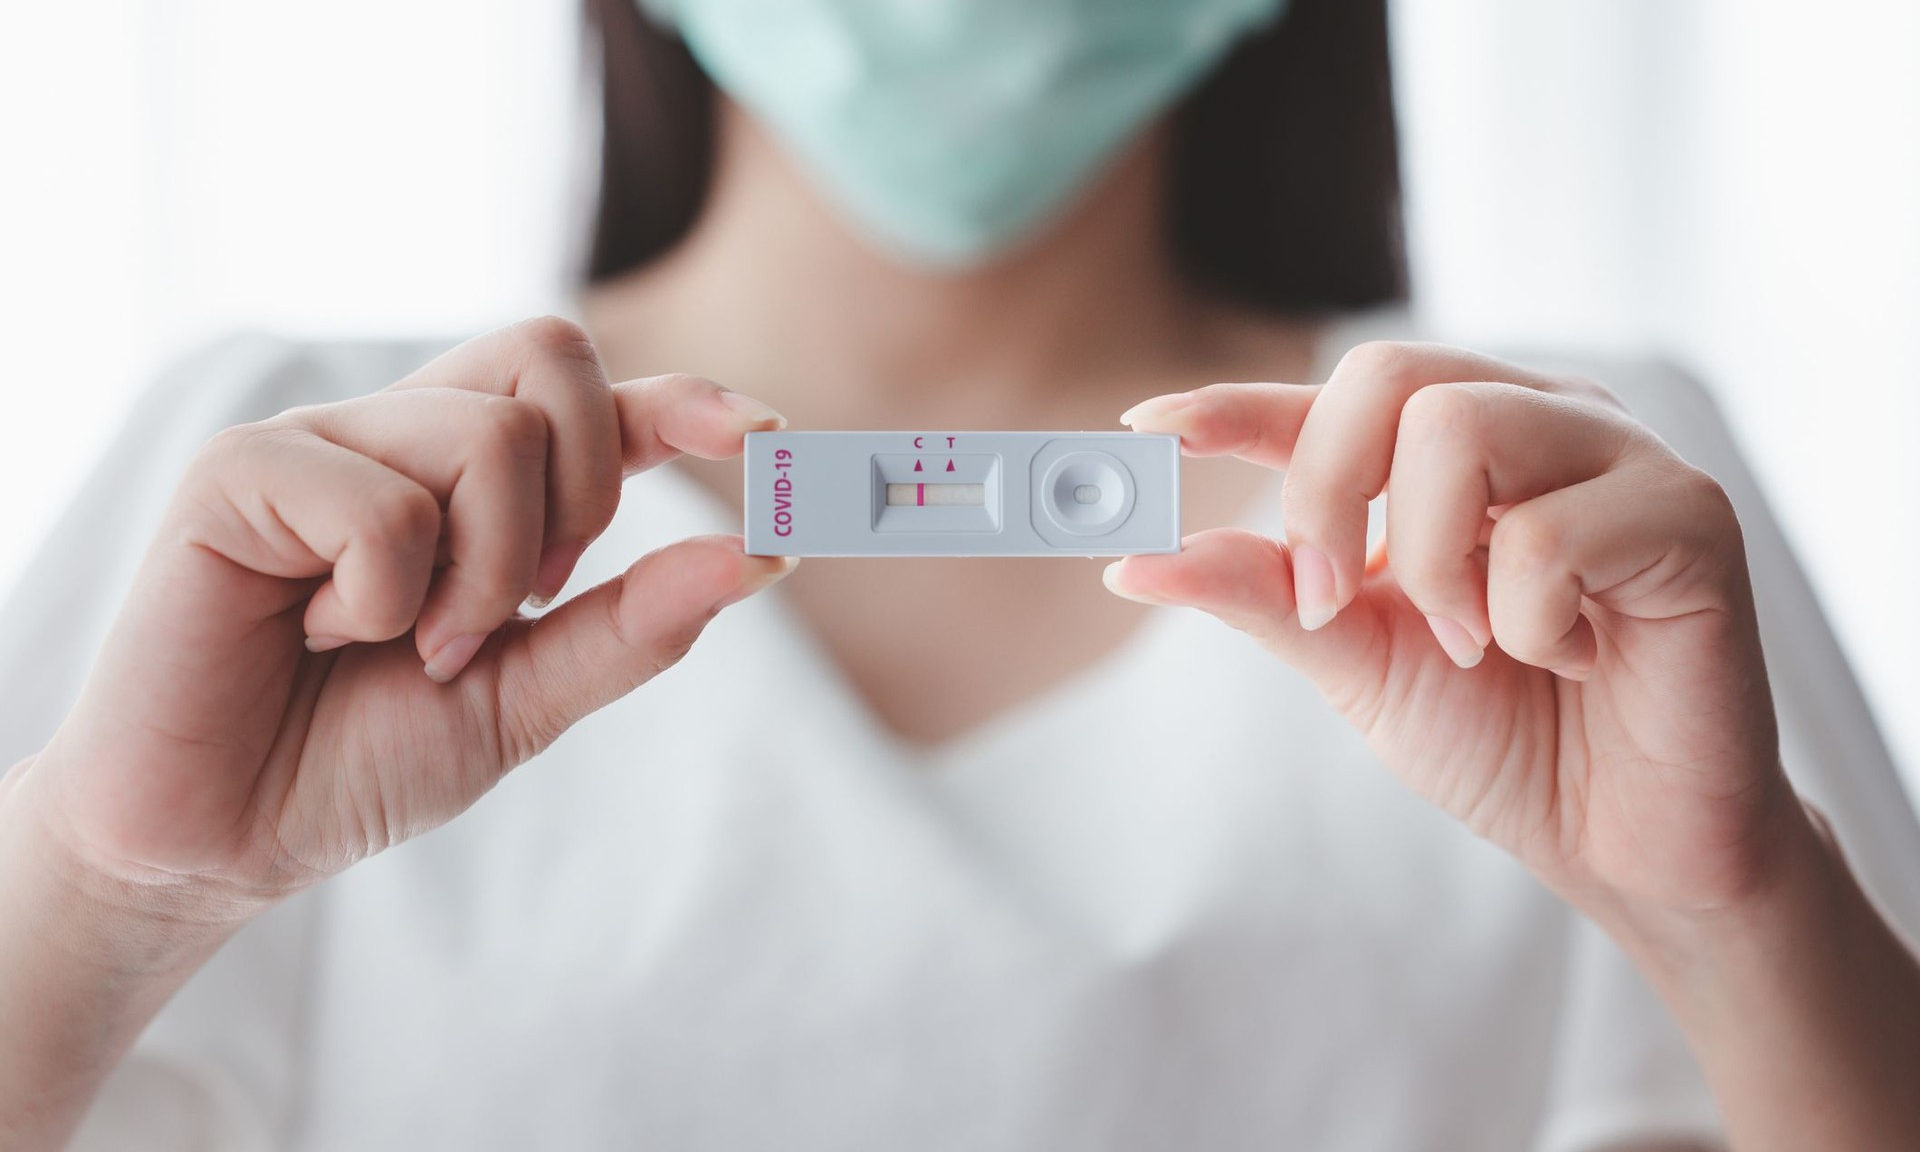 Спермограмма с MAR-тестом в Нижнем Новгороде - цена в клинике «Папа, мама и малыш»